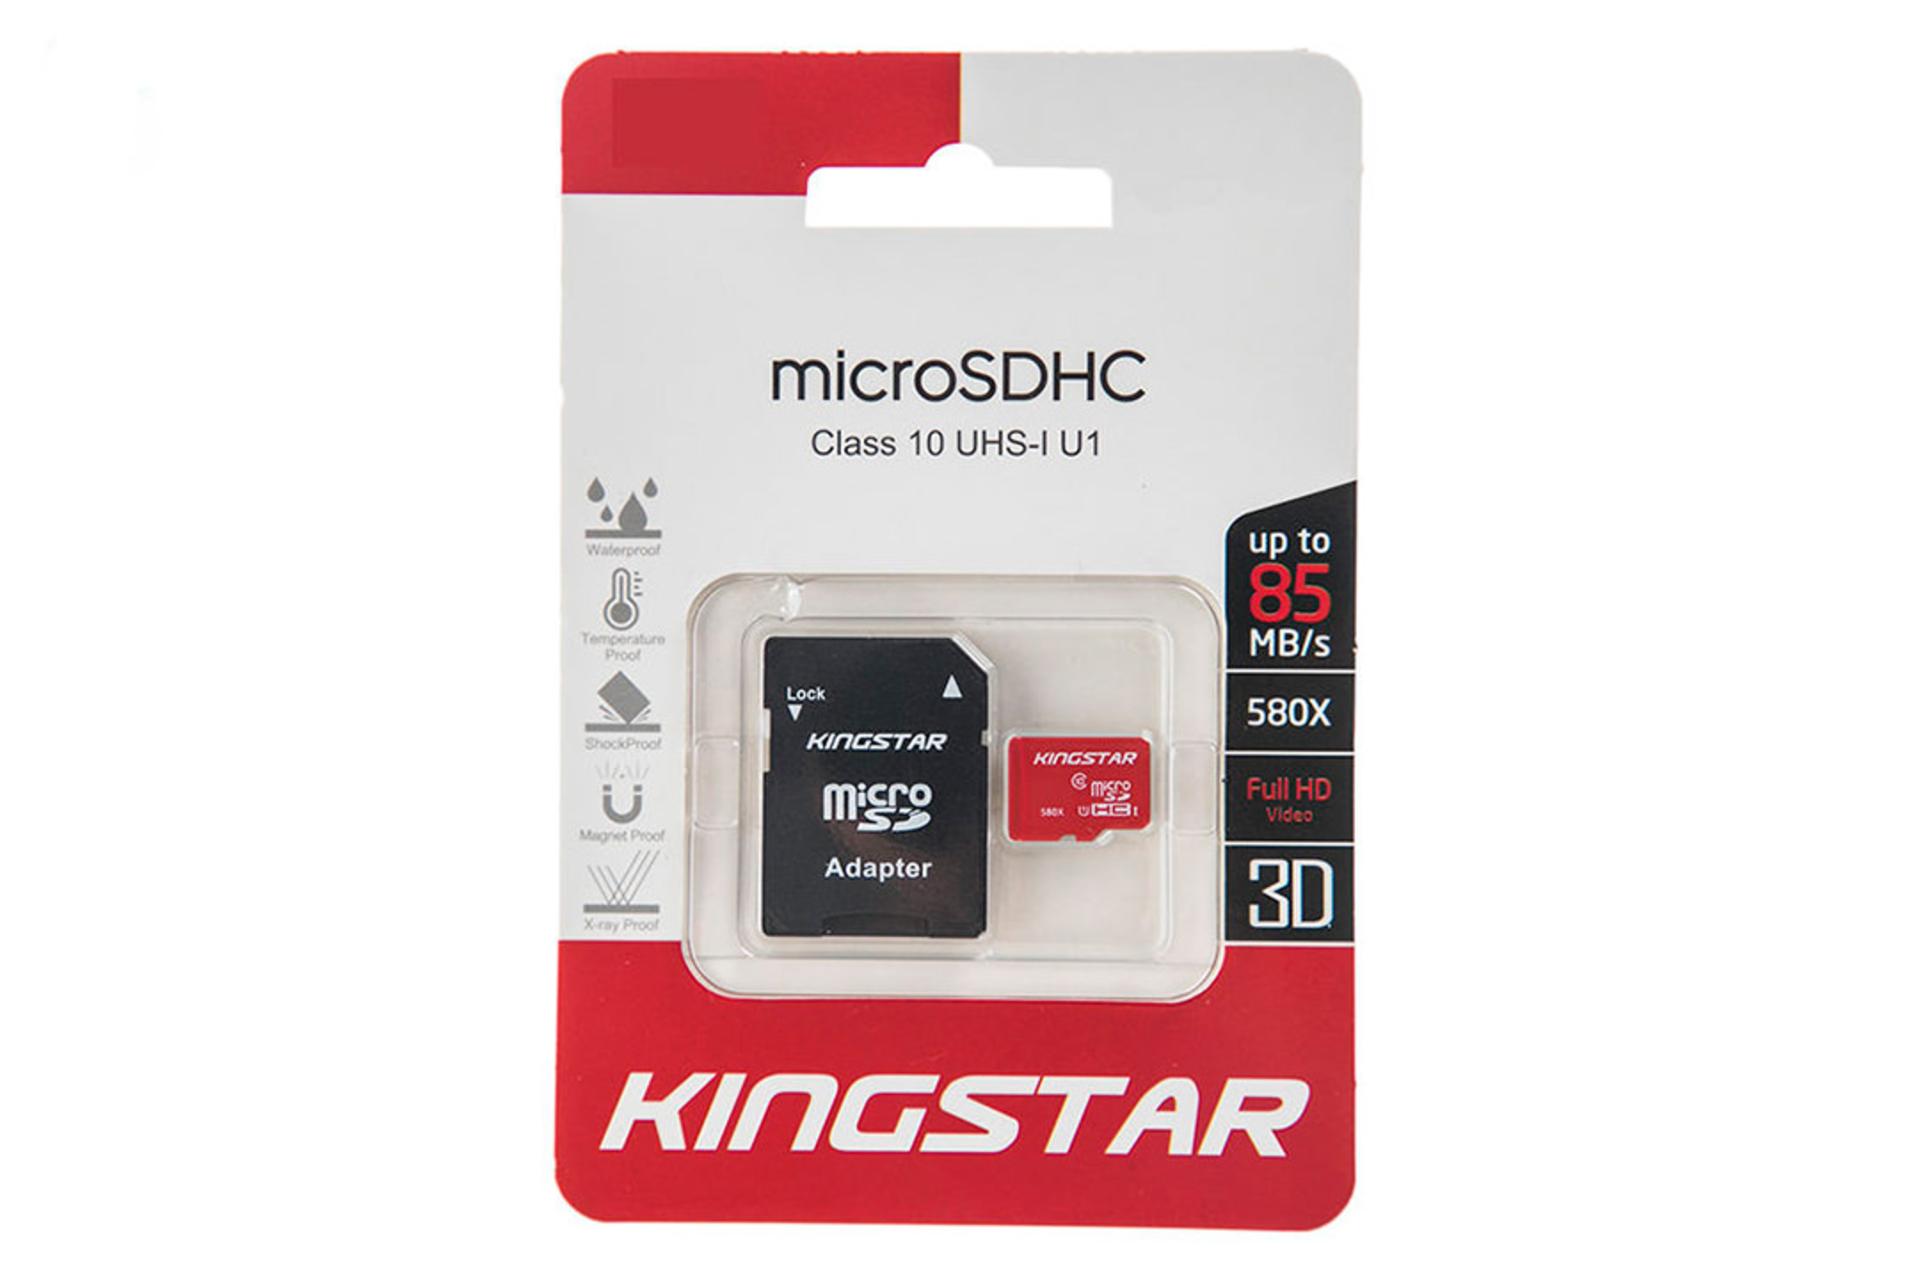 مرجع متخصصين ايران Kingstar microSDHC Class 10 UHS-I U1 16GB